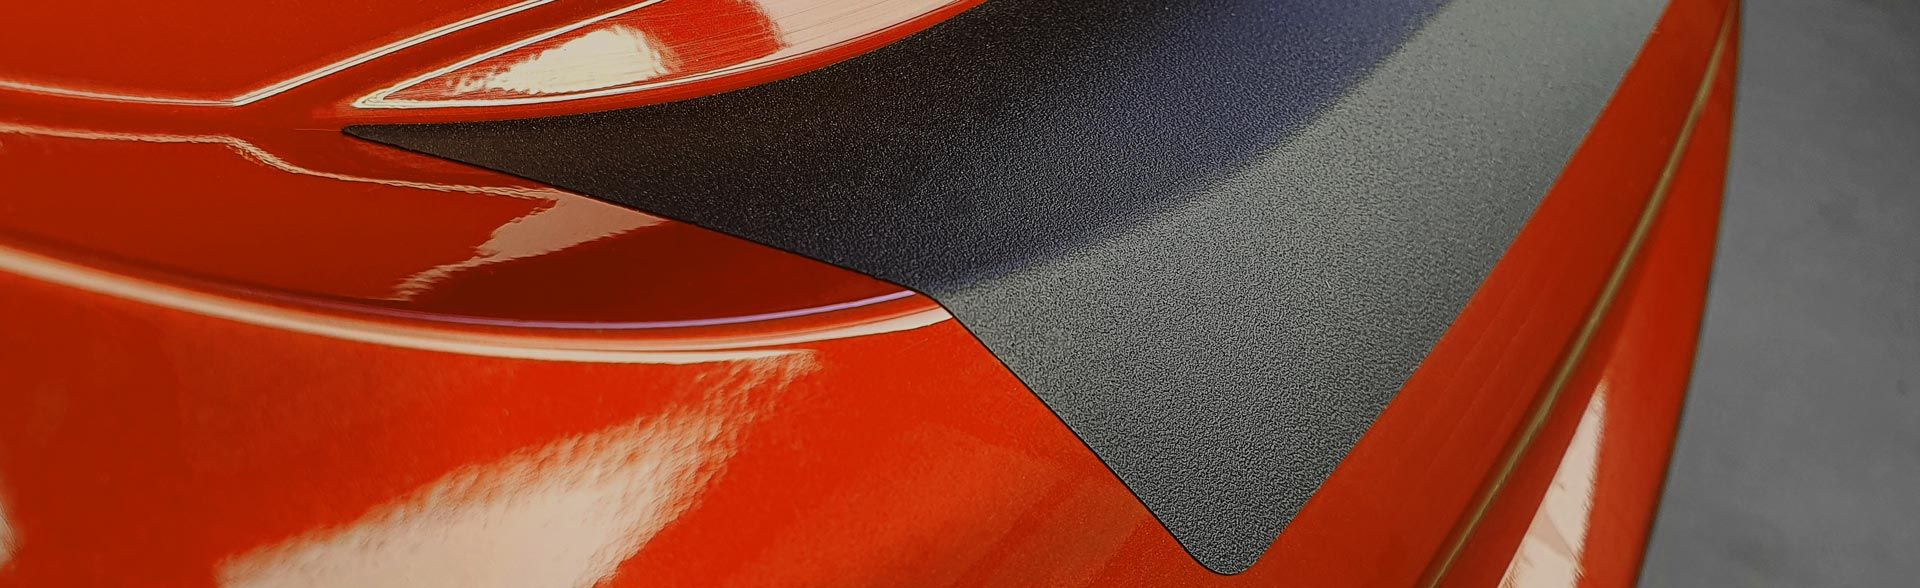 PR-Folia Einstiegsleisten Schutzfolie Set für - Nissan Qashqai Typ J12 ab  Bj. 06/2021 - Carbon Autofolie Schutz Folie Zubehör Schwellerschutz :  : Auto & Motorrad